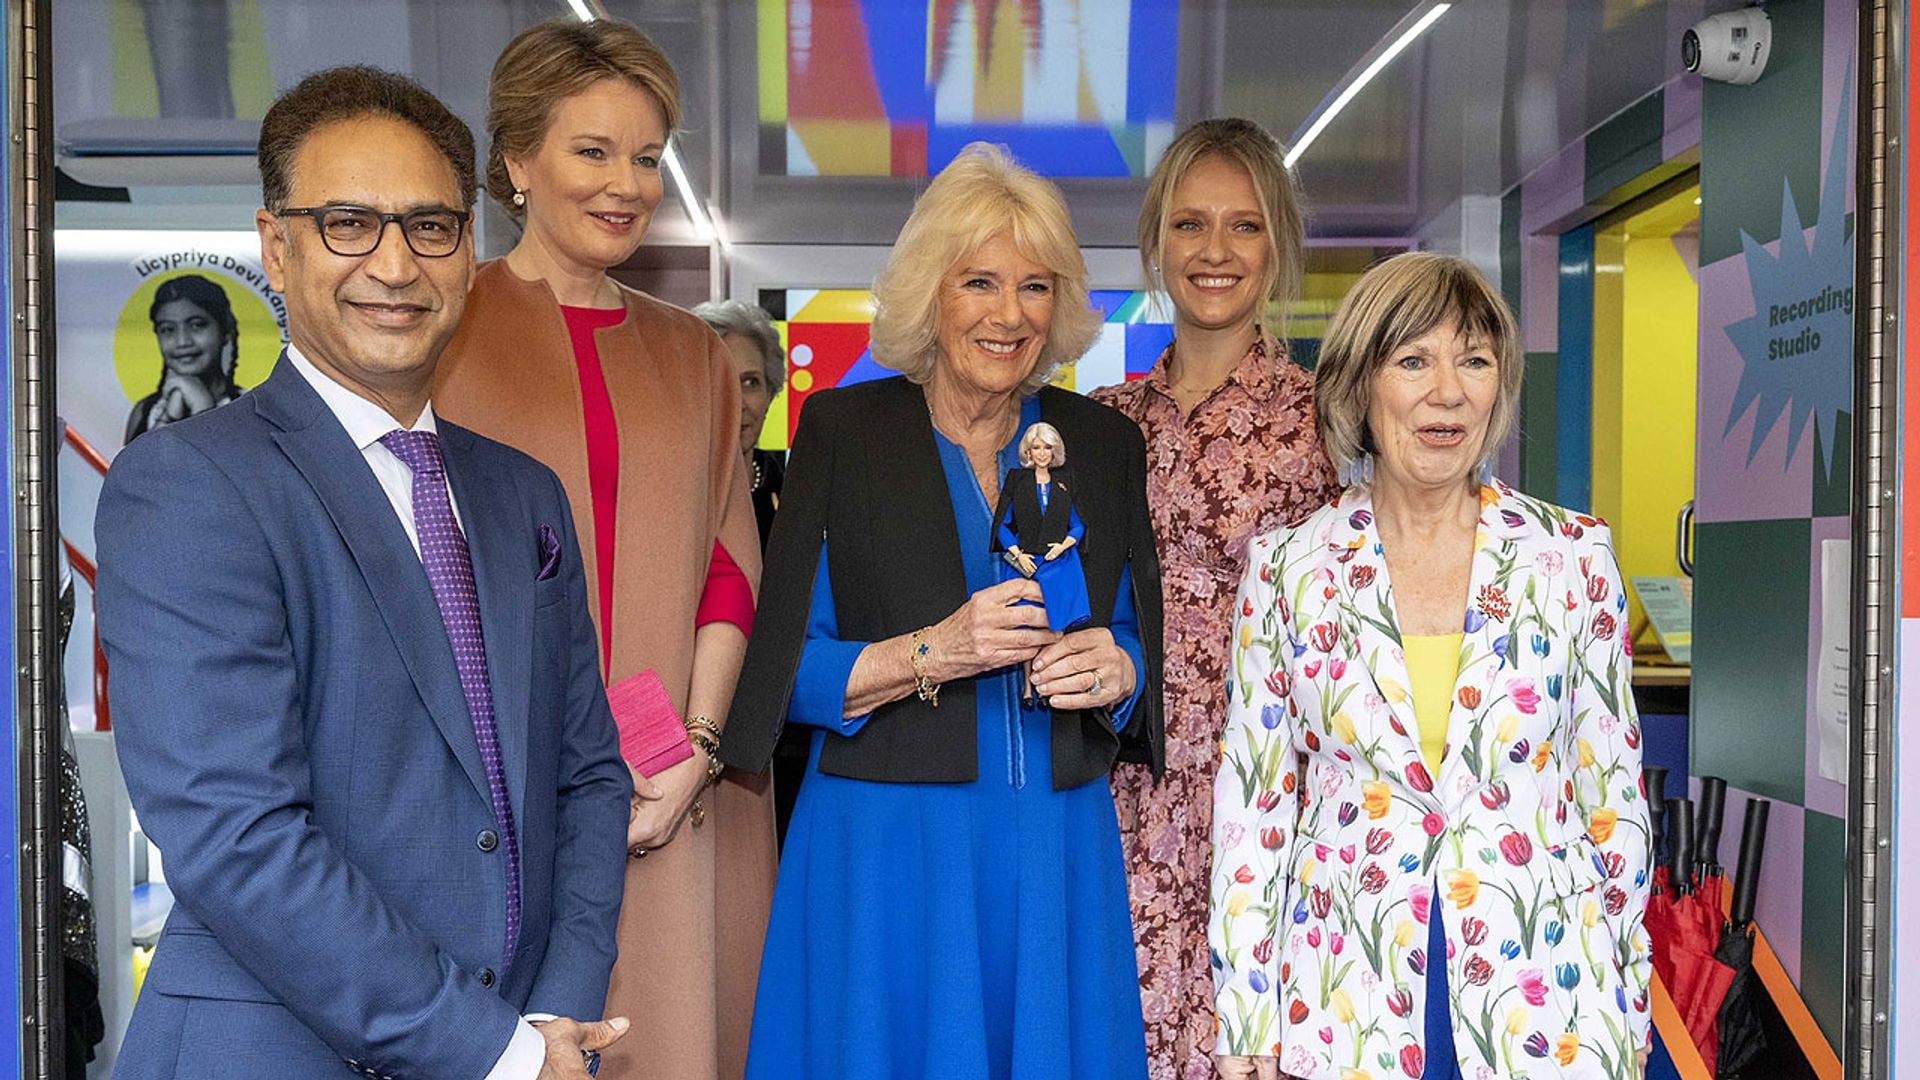 La reina Camilla posa con la 'Barbie Camilla' y bromea: 'Me han quitado 50 años'